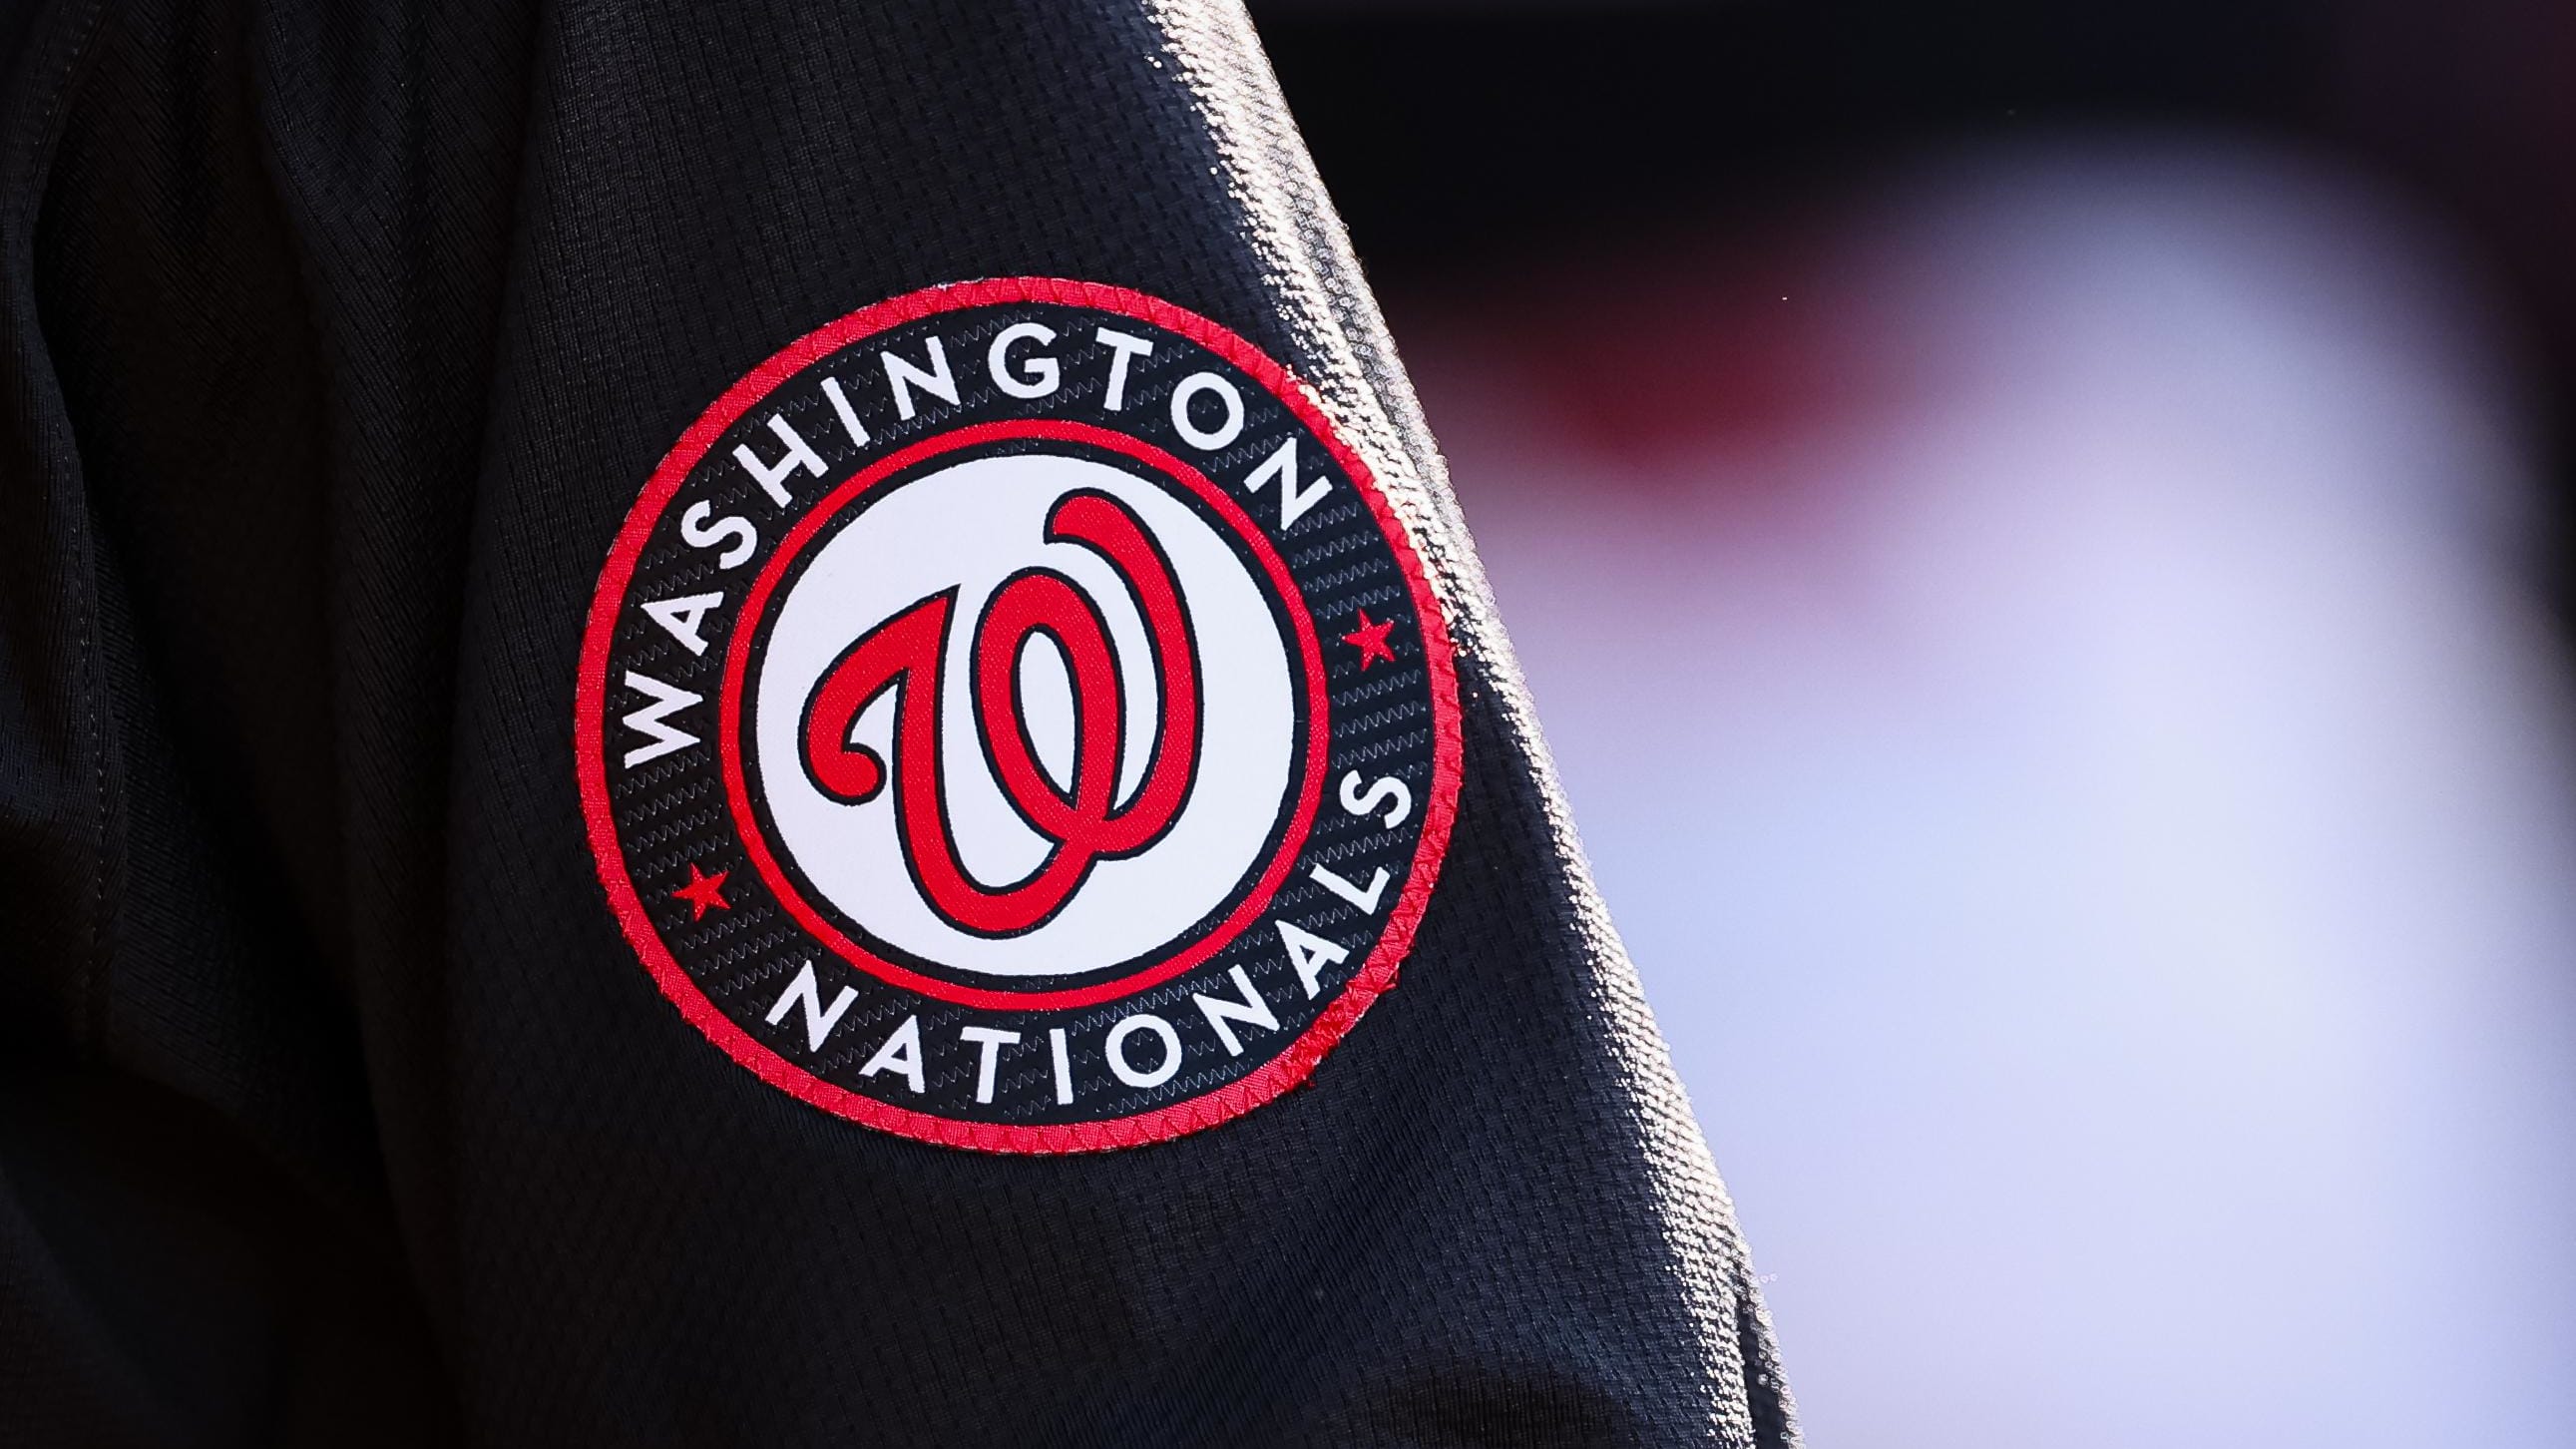 Washington Nationals' logo